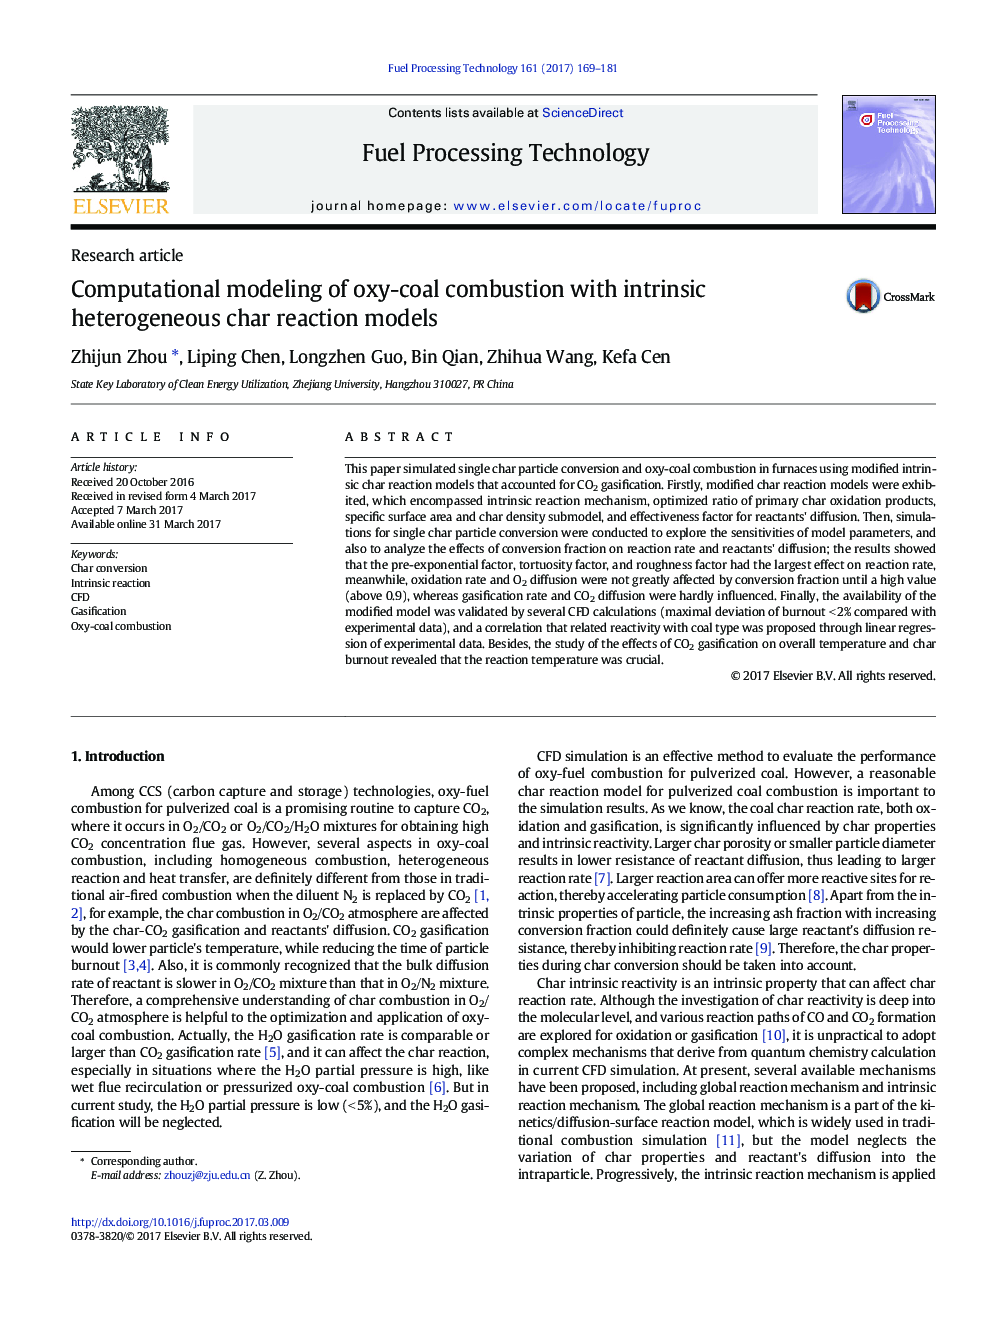 مدل سازی محاسباتی احتراق اکسین زغال سنگ با مدل های واکنش کربن ناهمگون